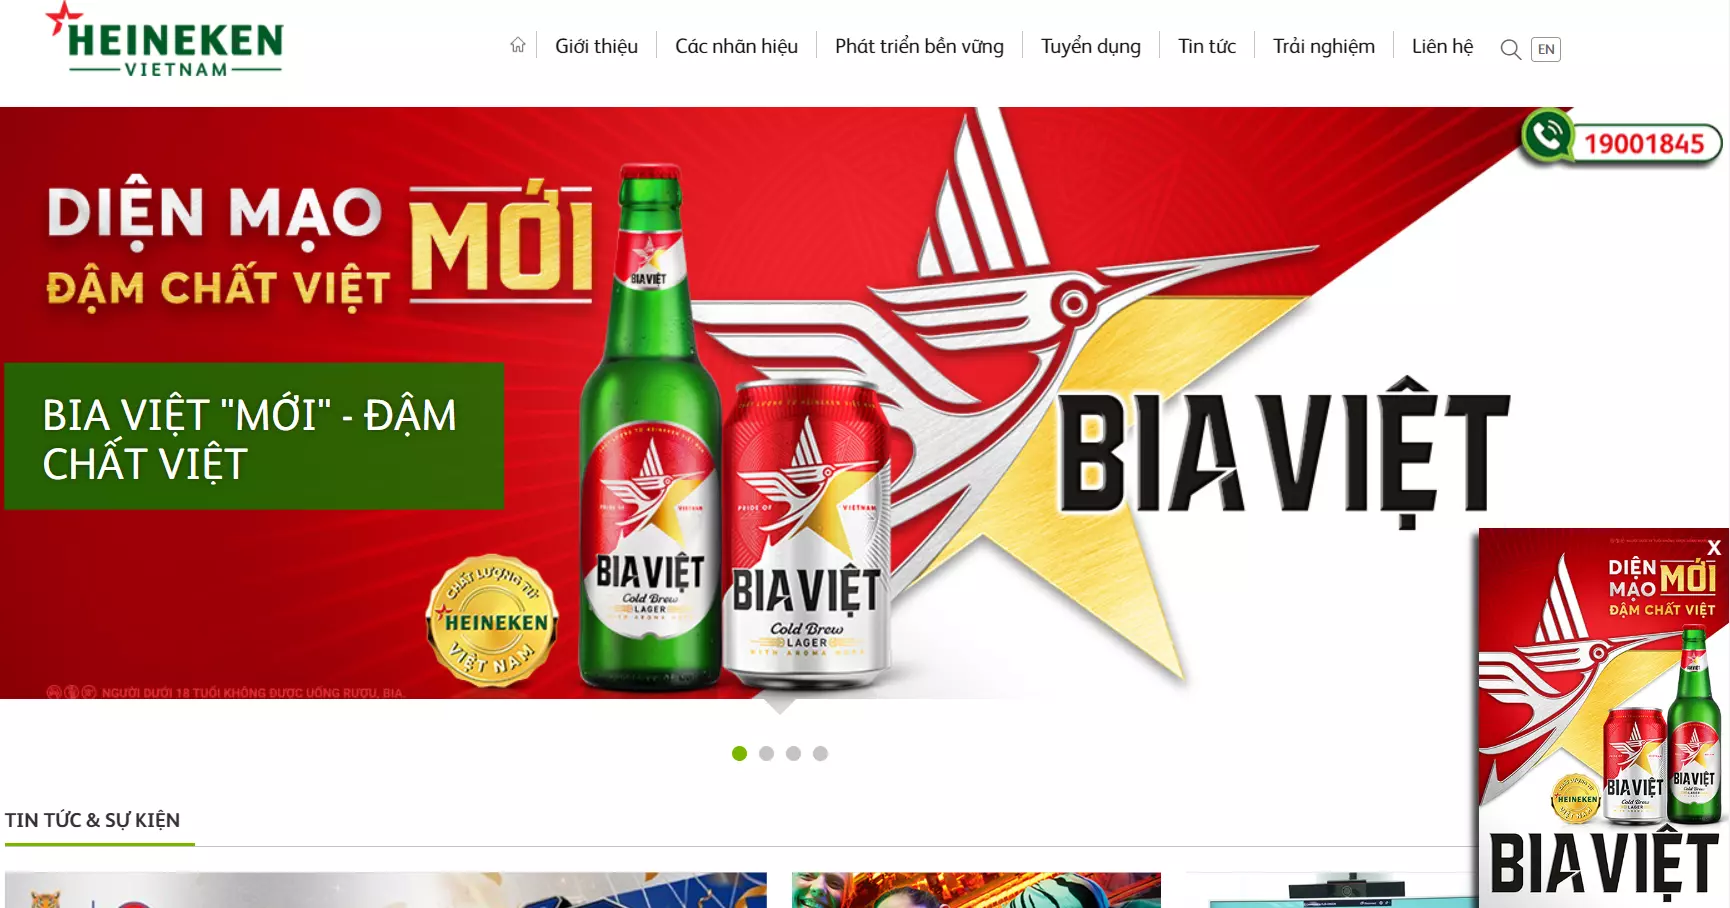 Heineken Corporation Vietnam là Website bán hàng đẹp